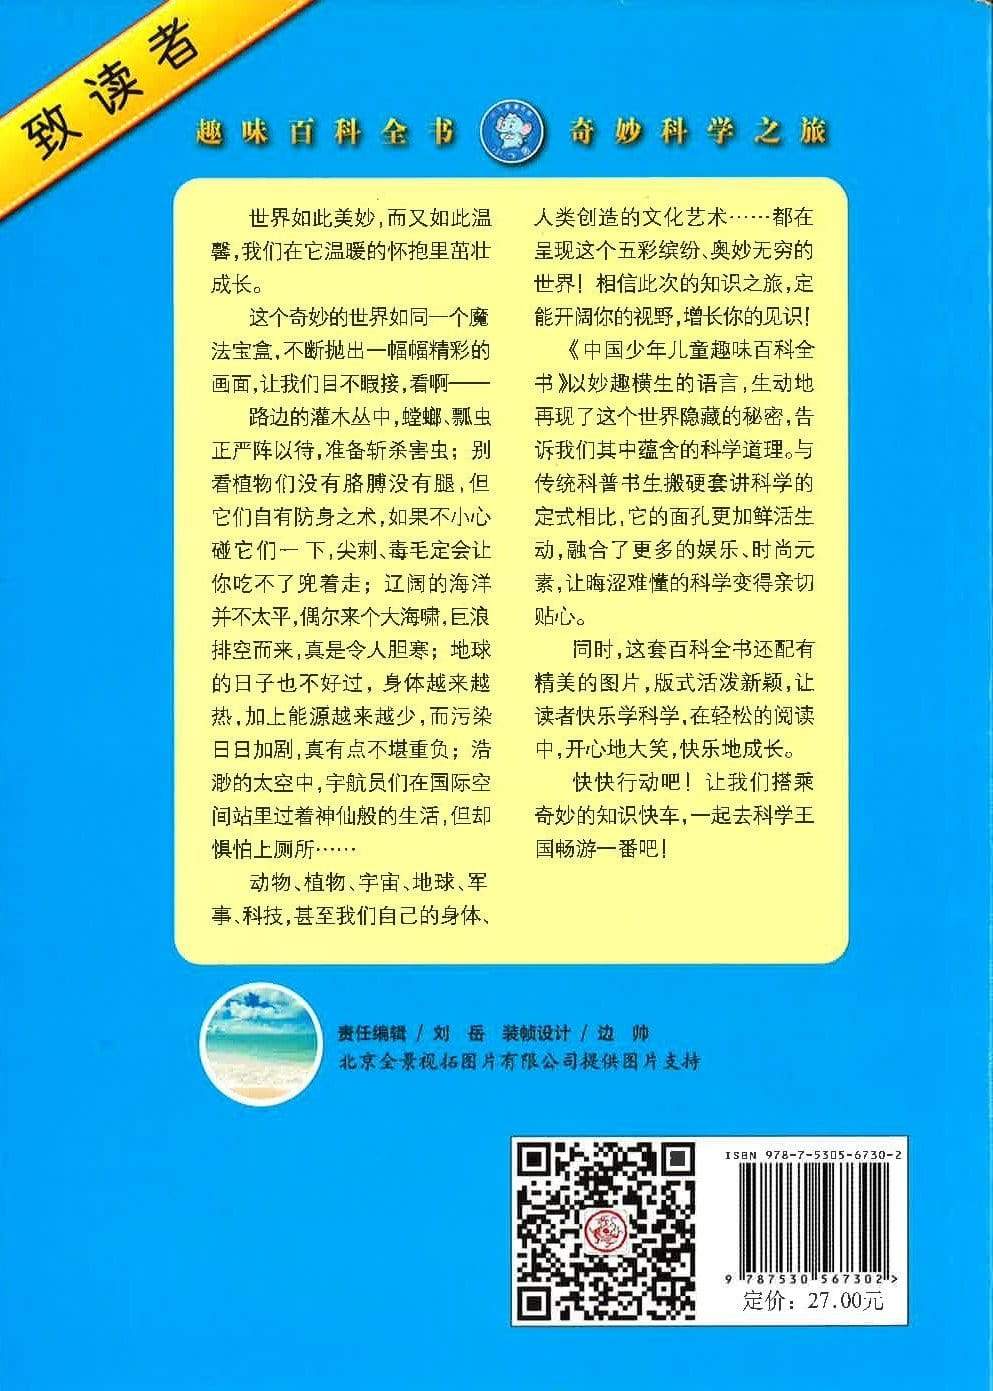 中国少年儿童趣味百科全书（海洋篇）